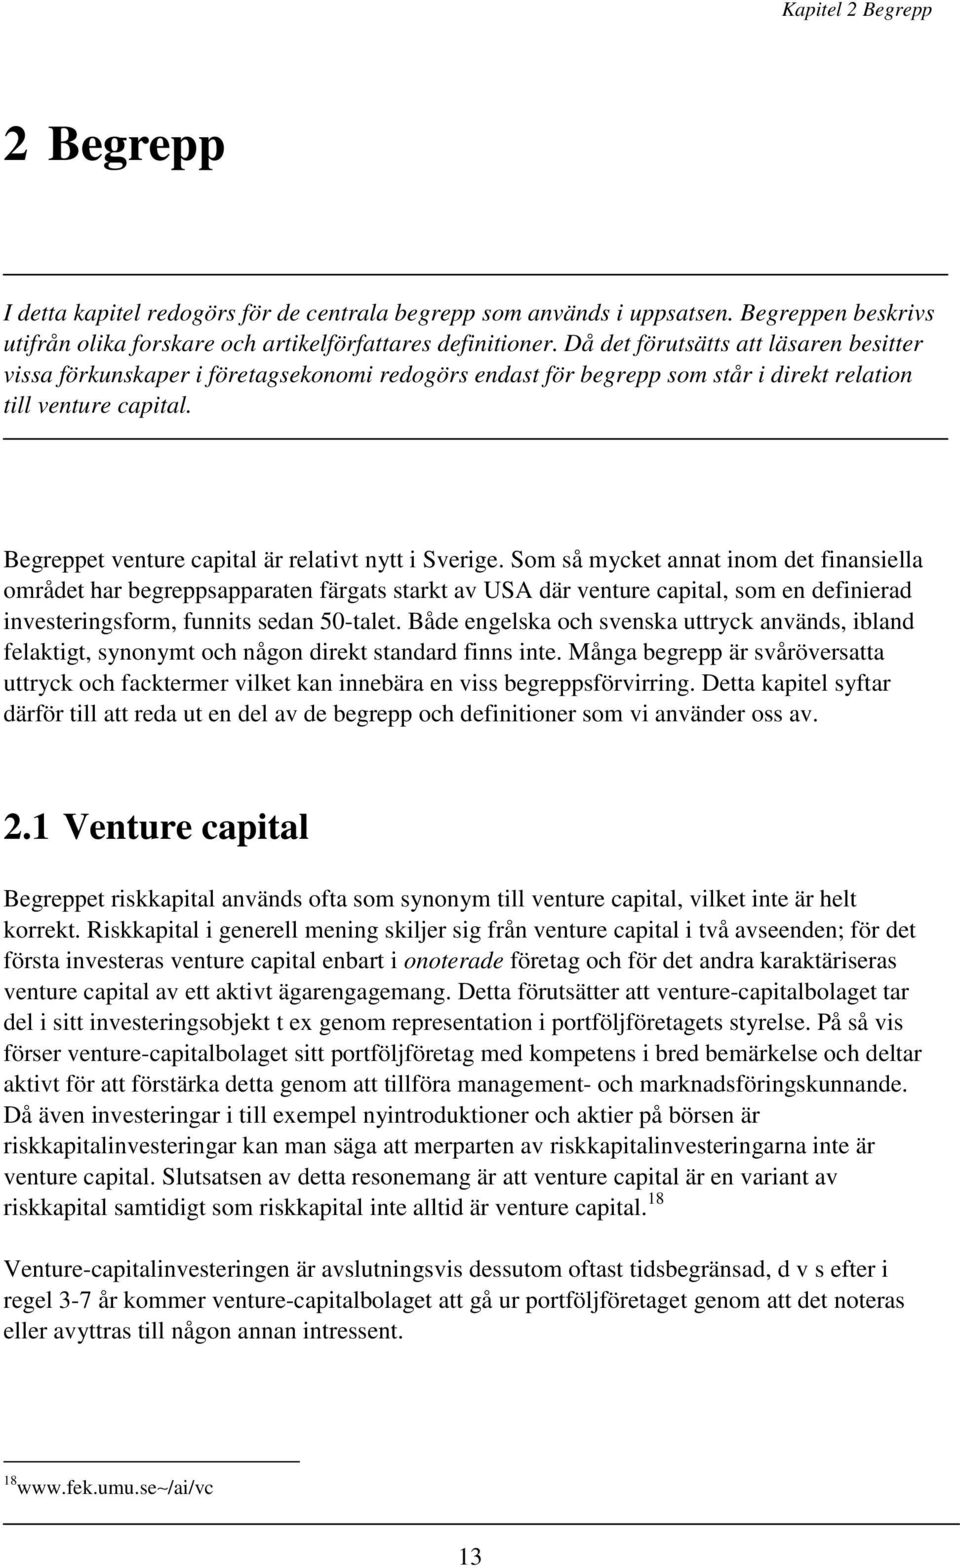 Begreppet venture capital är relativt nytt i Sverige.